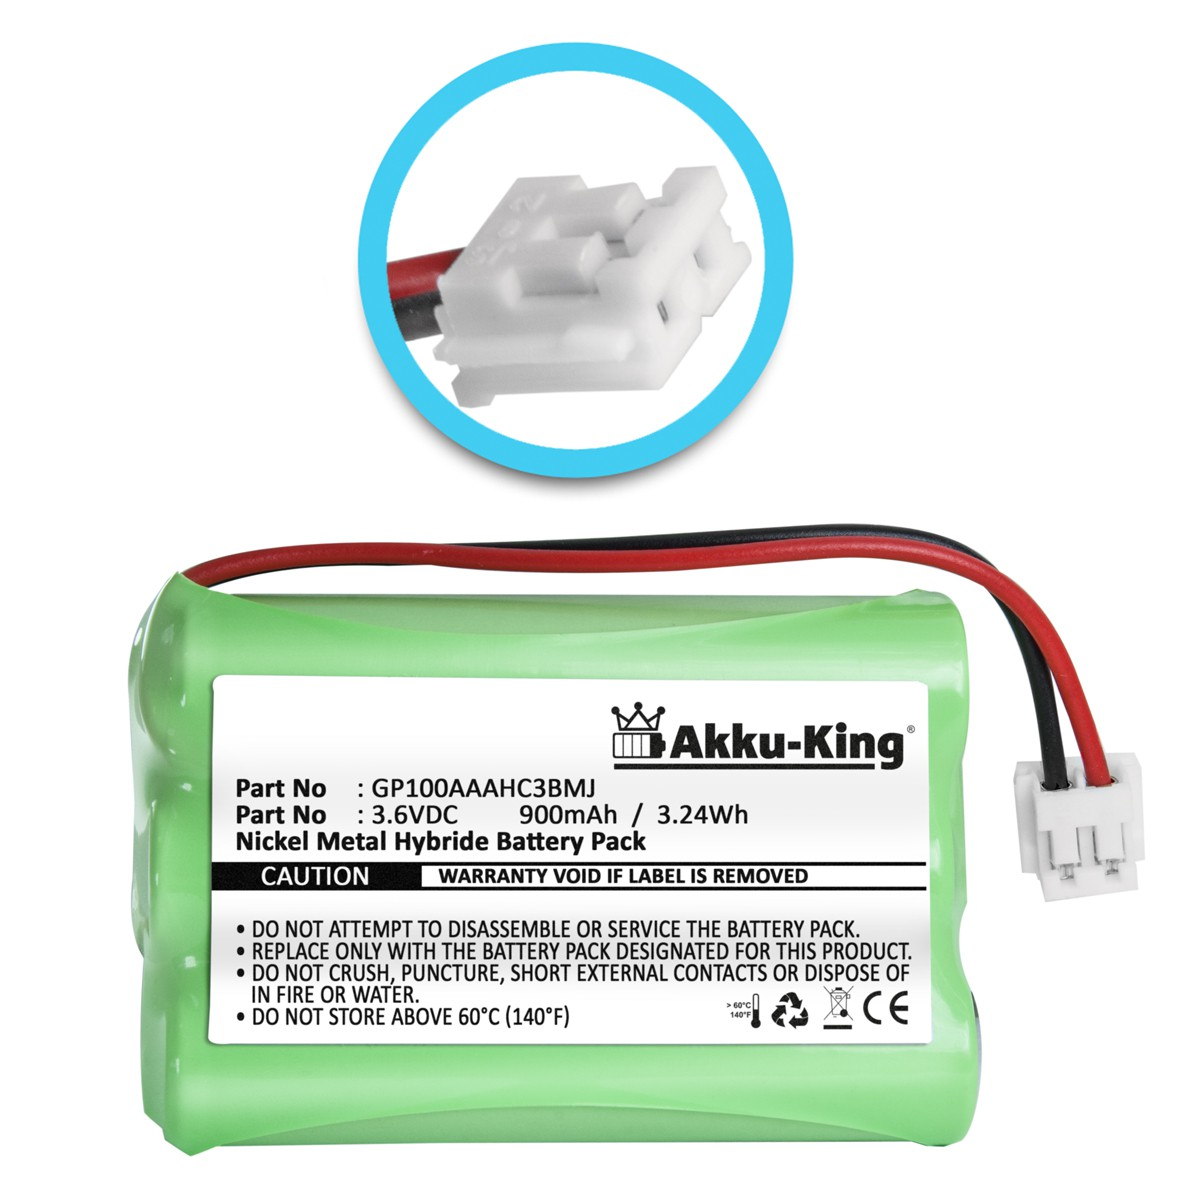 AKKU-KING Akku kompatibel mit Audioline 3.6 GP100AAAHC3BMJ Volt, Geräte-Akku, Ni-MH 900mAh